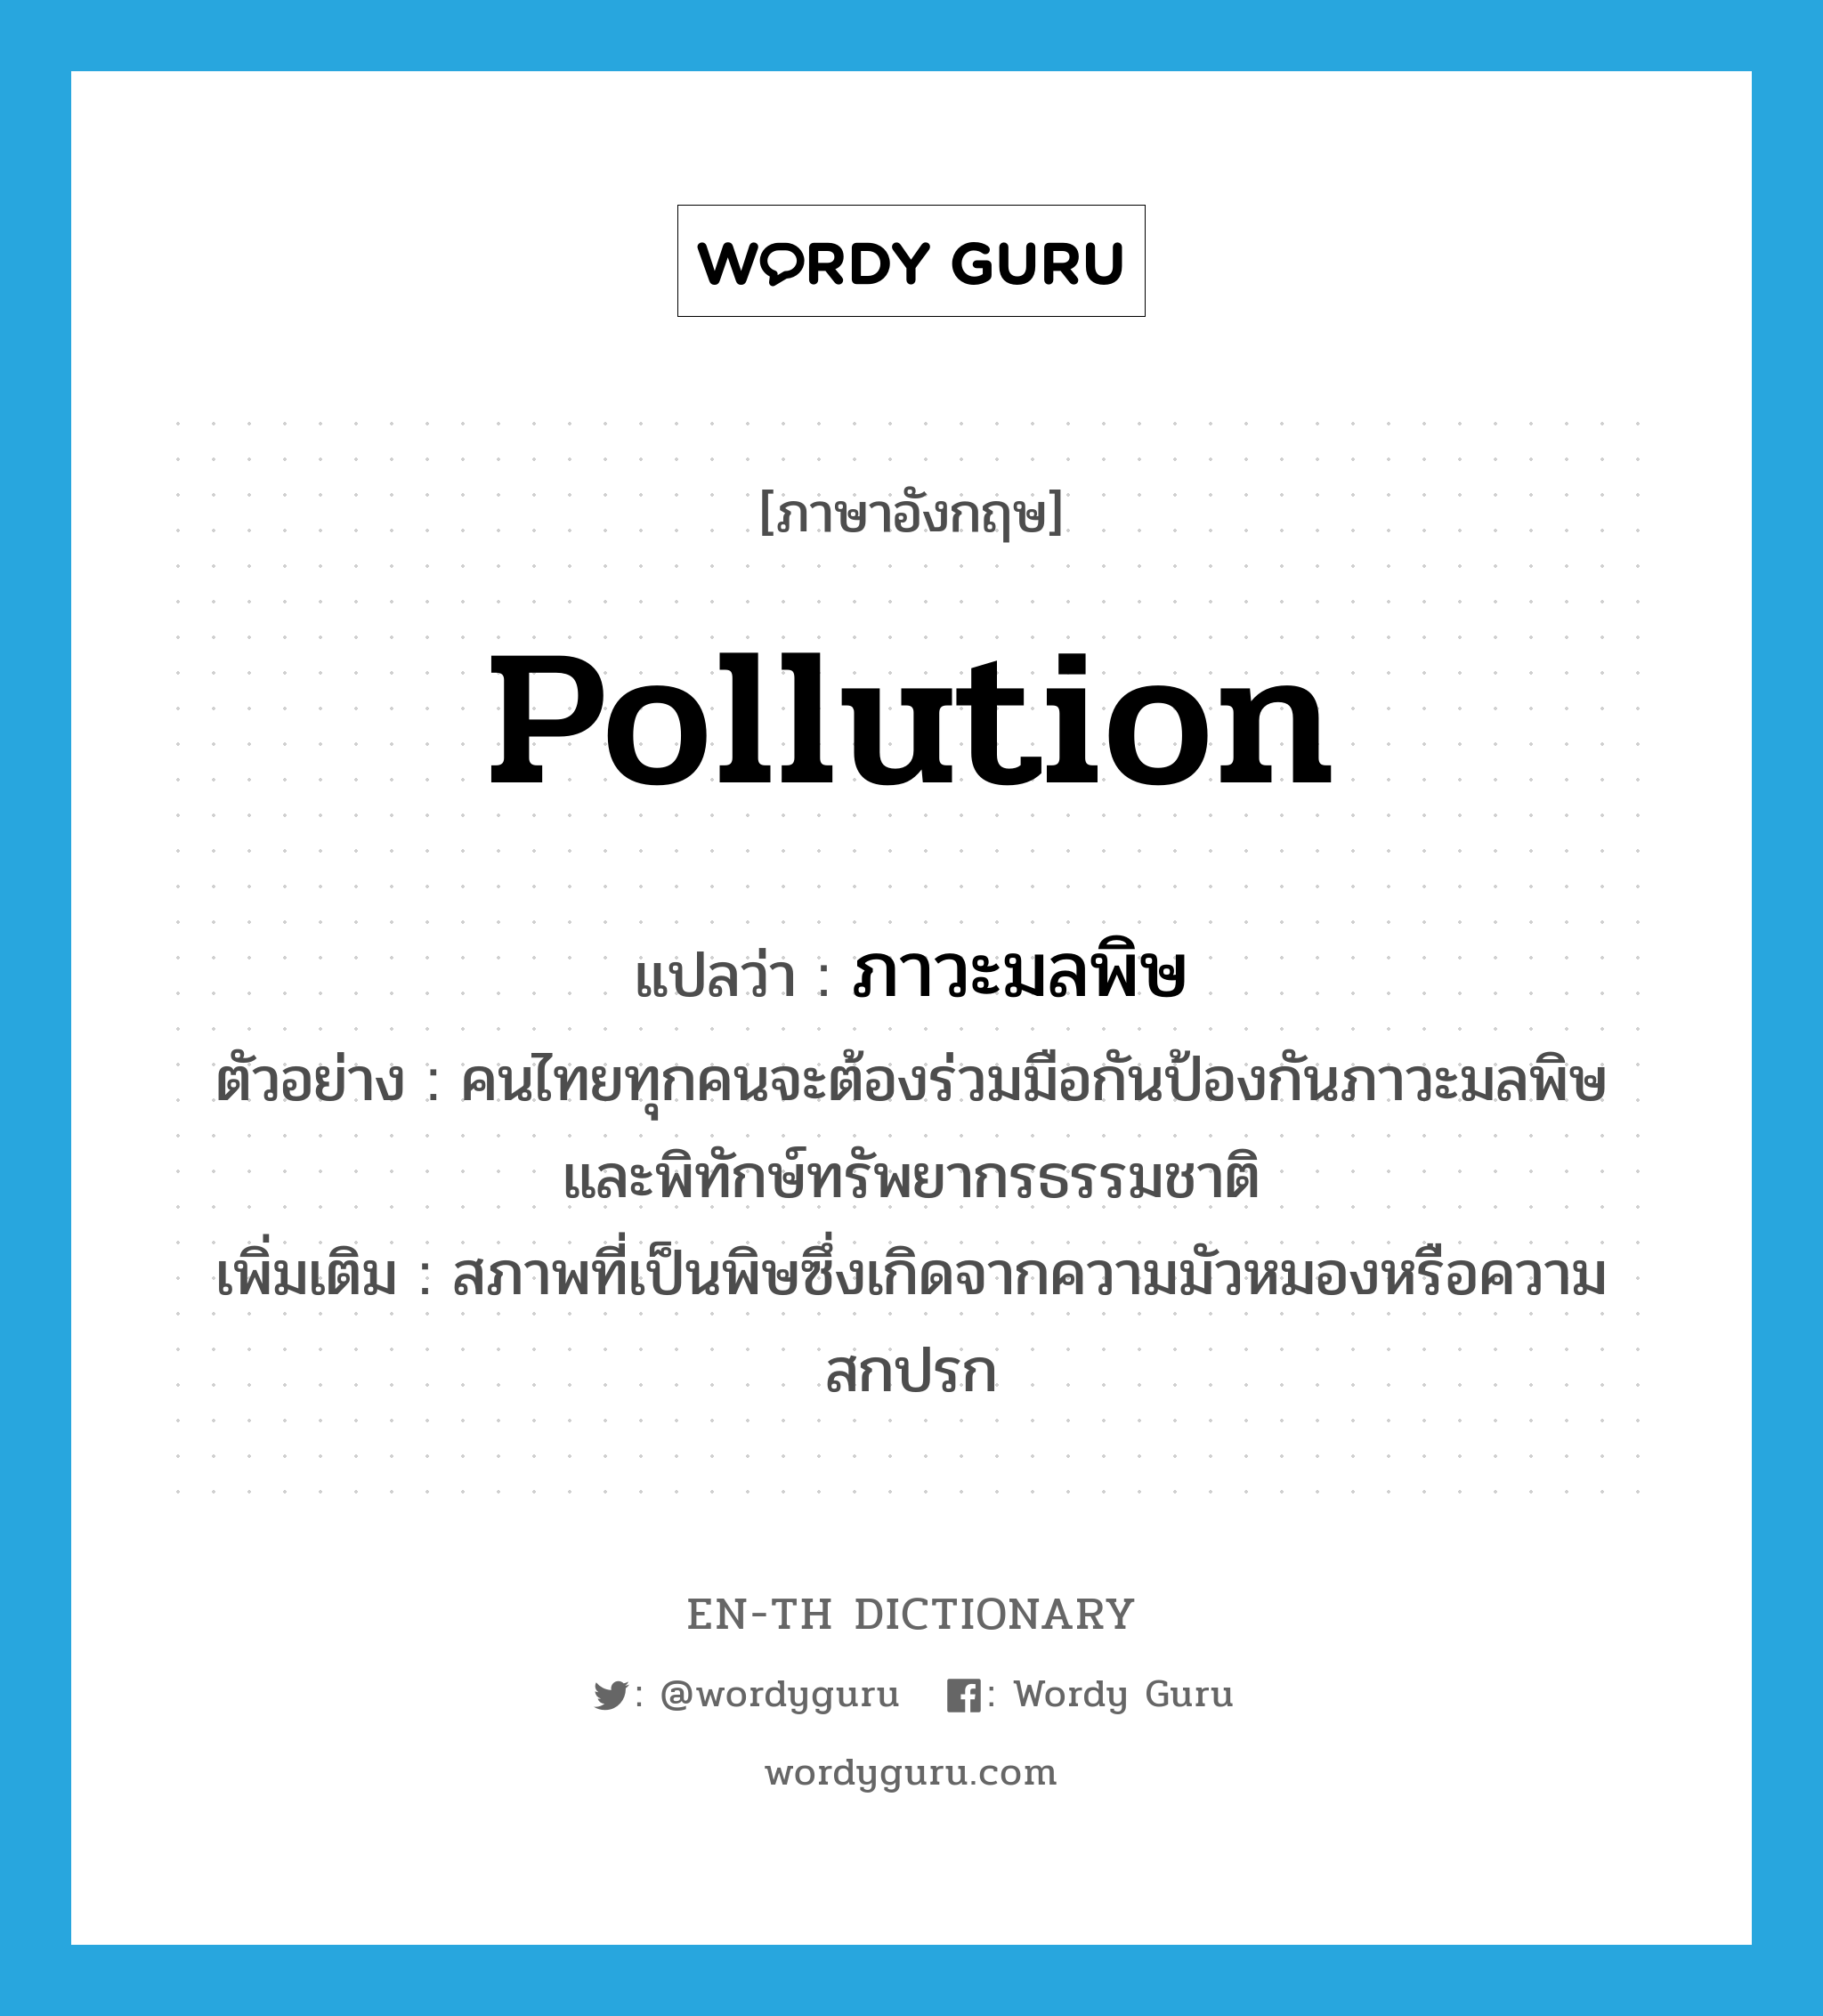 pollution แปลว่า?, คำศัพท์ภาษาอังกฤษ pollution แปลว่า ภาวะมลพิษ ประเภท N ตัวอย่าง คนไทยทุกคนจะต้องร่วมมือกันป้องกันภาวะมลพิษ และพิทักษ์ทรัพยากรธรรมชาติ เพิ่มเติม สภาพที่เป็นพิษซึ่งเกิดจากความมัวหมองหรือความสกปรก หมวด N